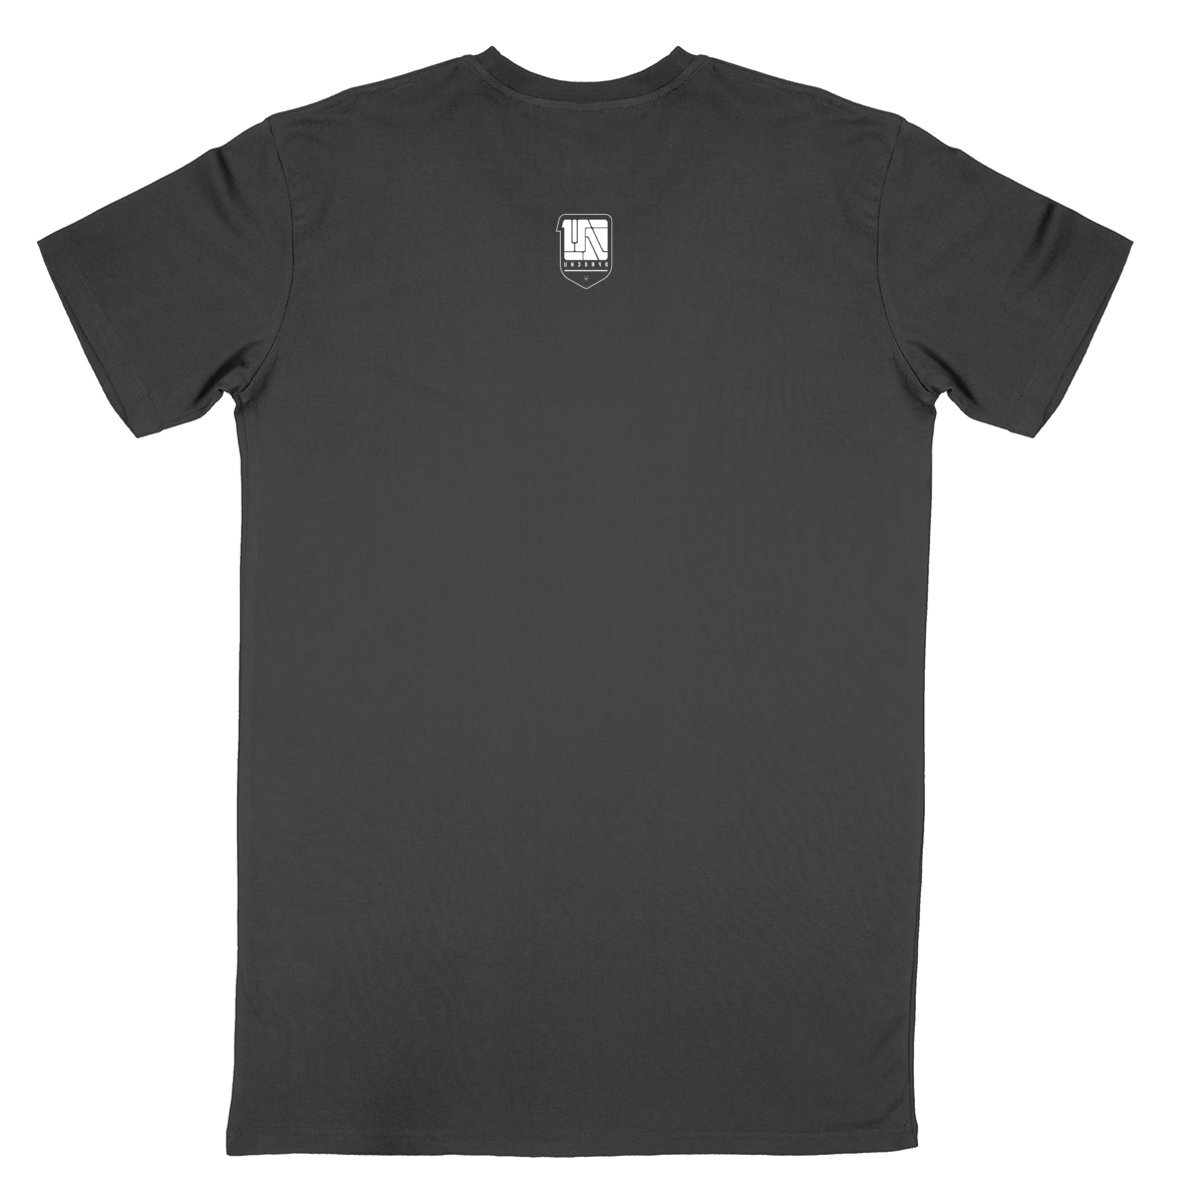 T-shirt Unisexe - Brand001